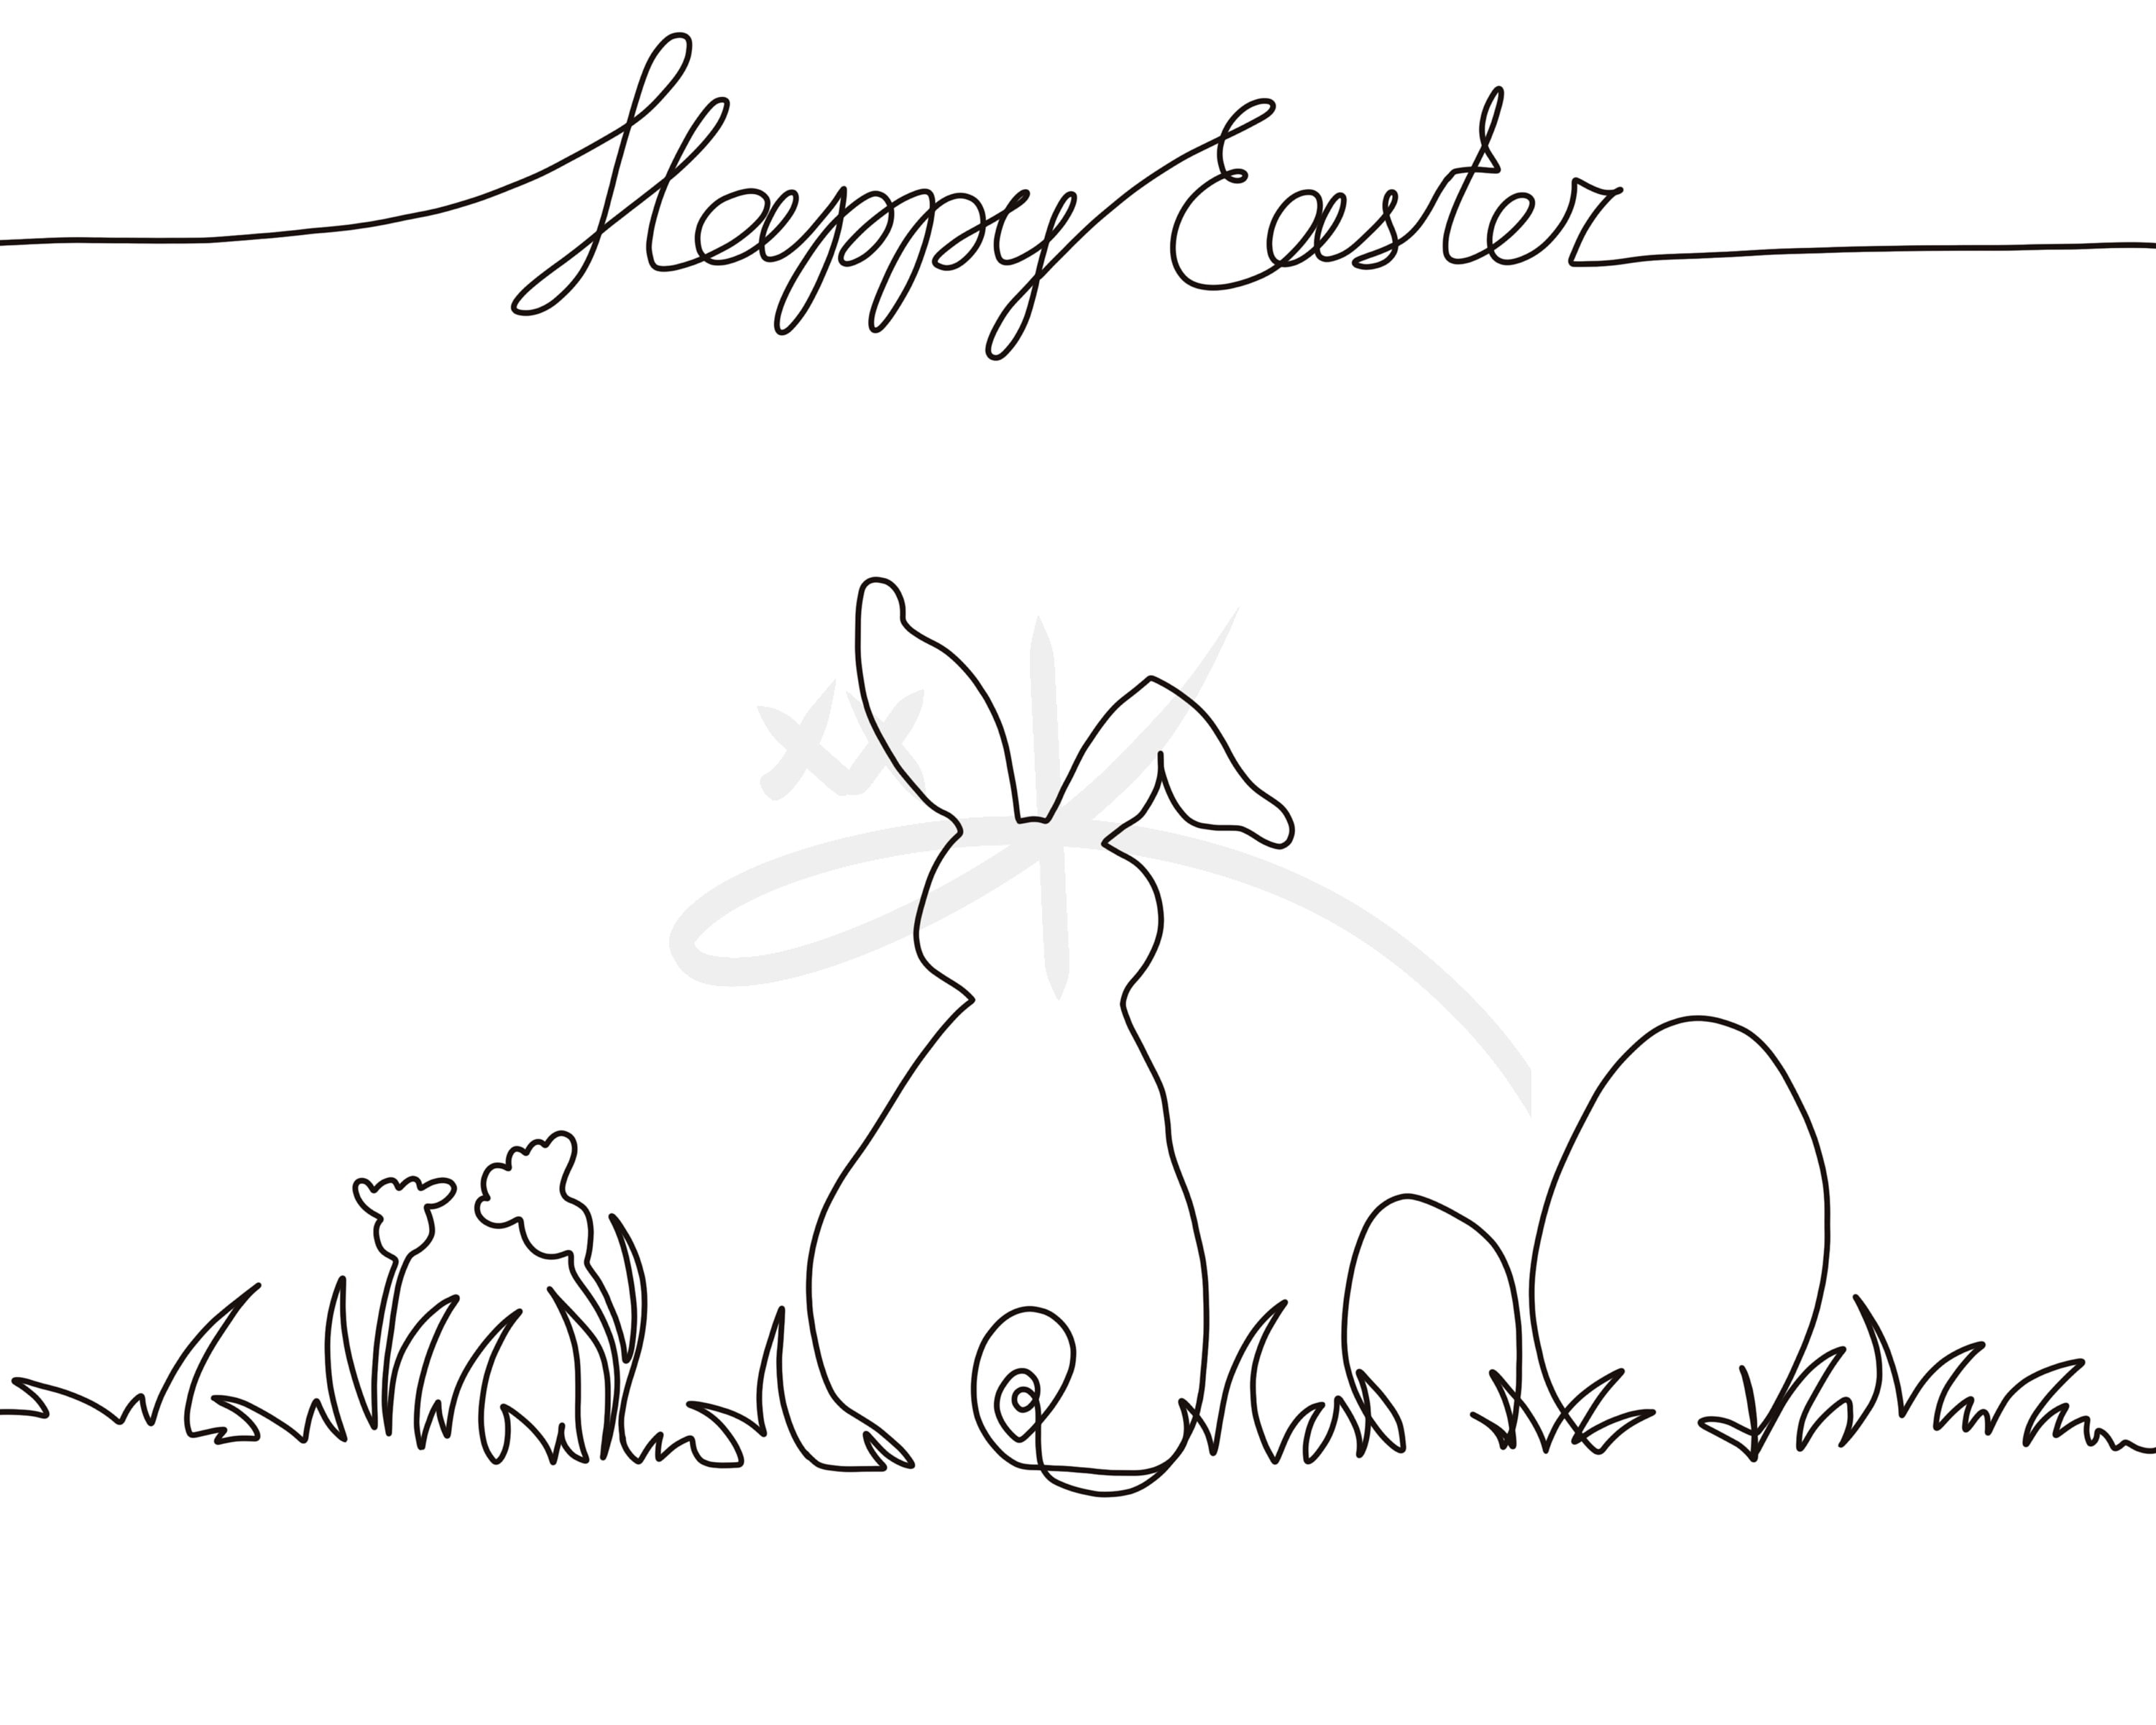 Happy Easter! — Laura Dreyer Illustration